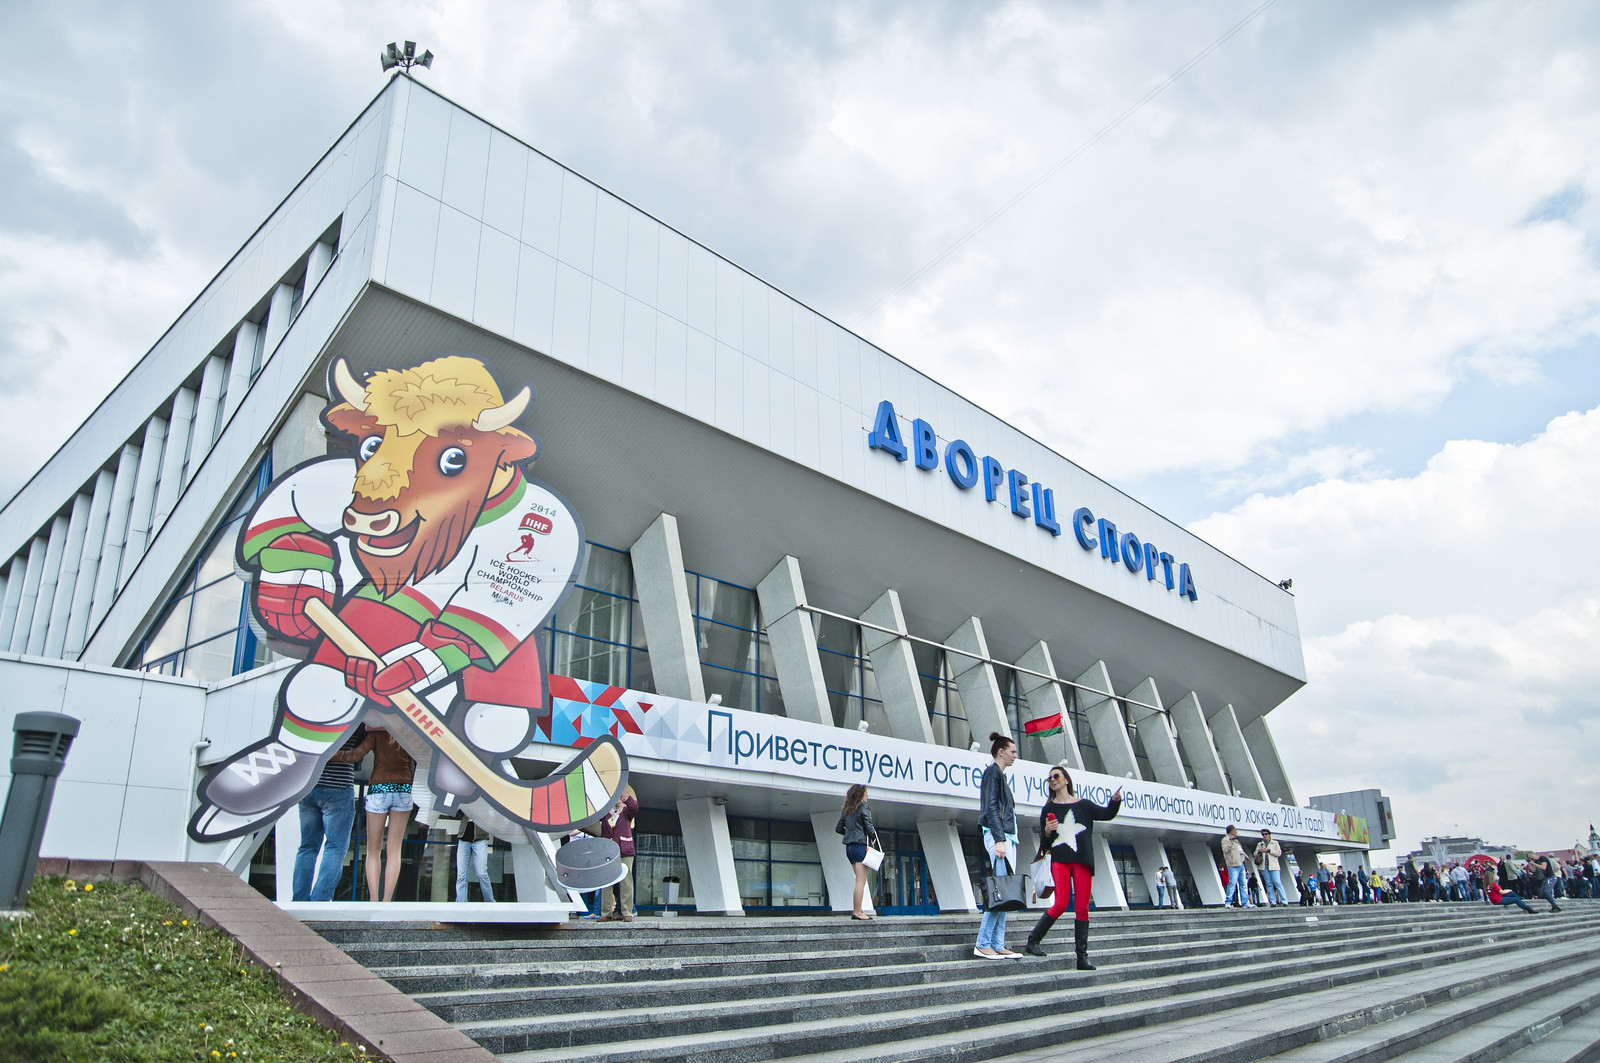 2014 IIHF World Championship